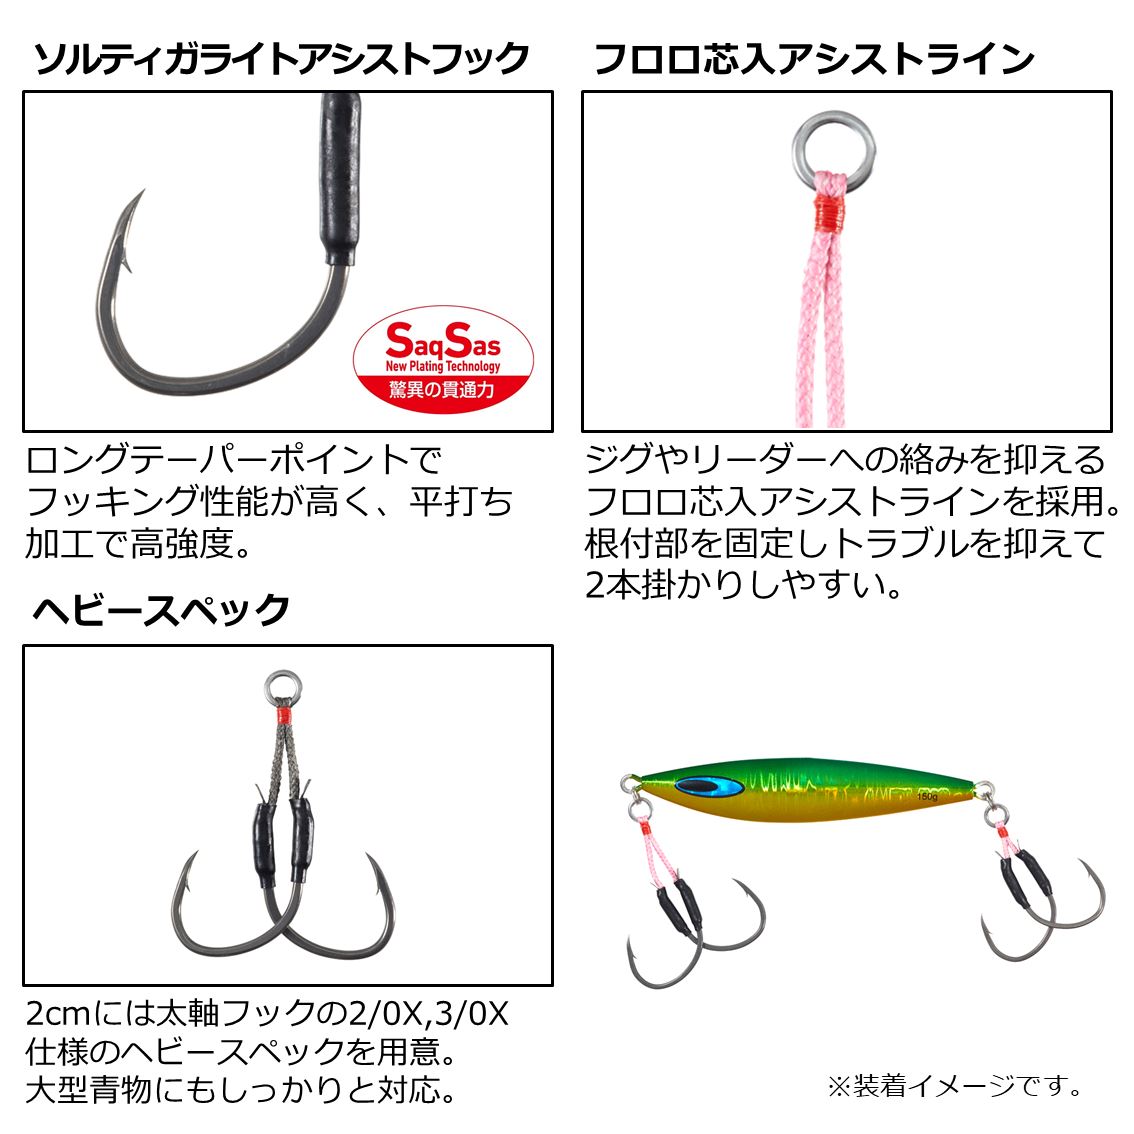 ダイワ ソルティガアシストSS ライトジギング 2cm ツイン #3/0 (アシストフック) - 釣り具の販売、通販なら、フィッシング遊-WEB本店  ダイワ／シマノ／がまかつの釣具ならおまかせ